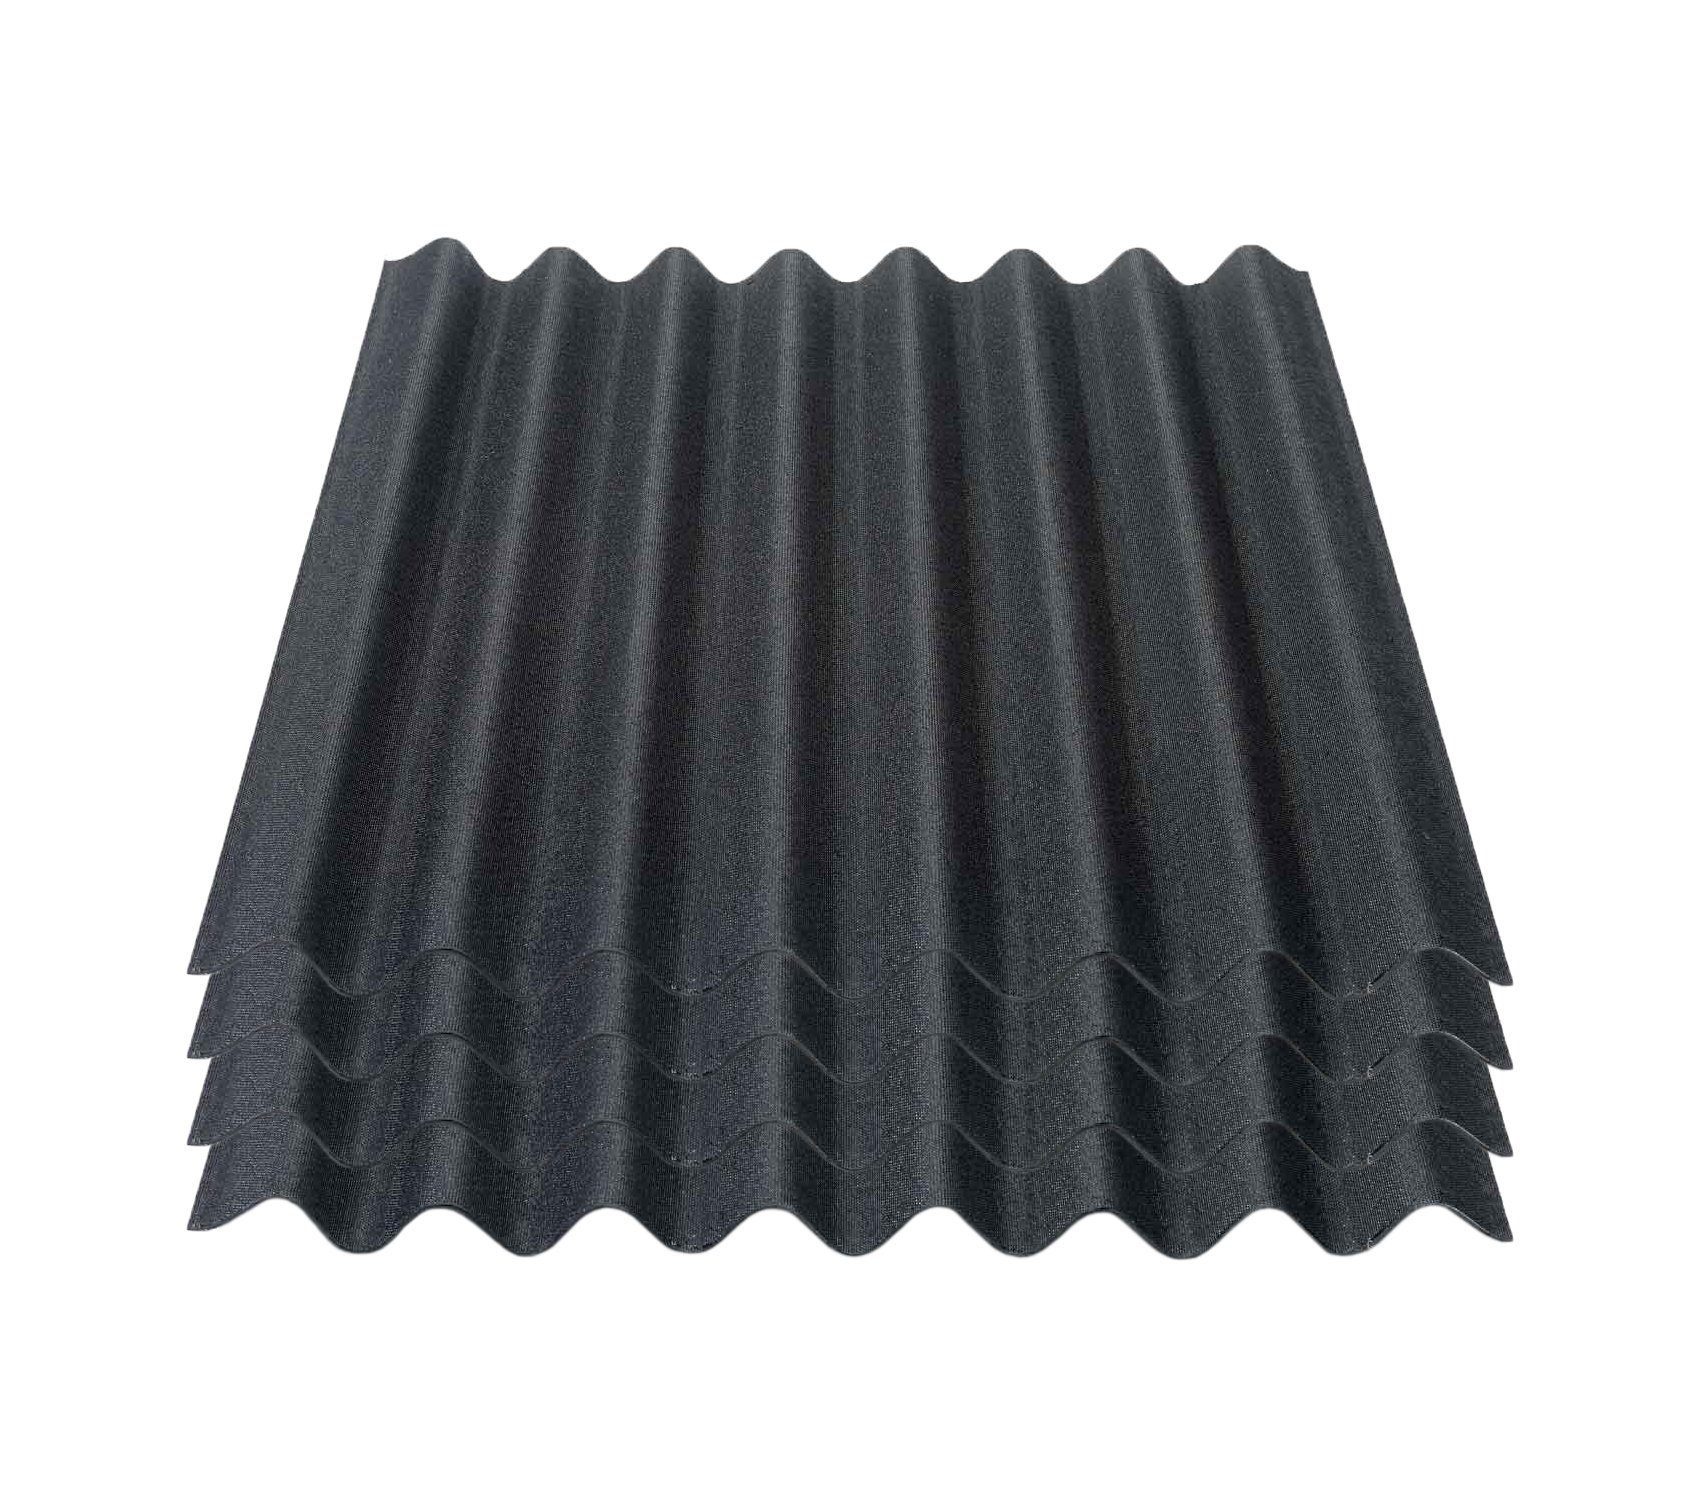 Onduline Dachpappe Onduline Easyline Dachplatte Wandplatte Bitumenwellplatten Wellplatte 4x0,76m² - schwarz, wellig, 3.04 m² pro Paket, (4-St)